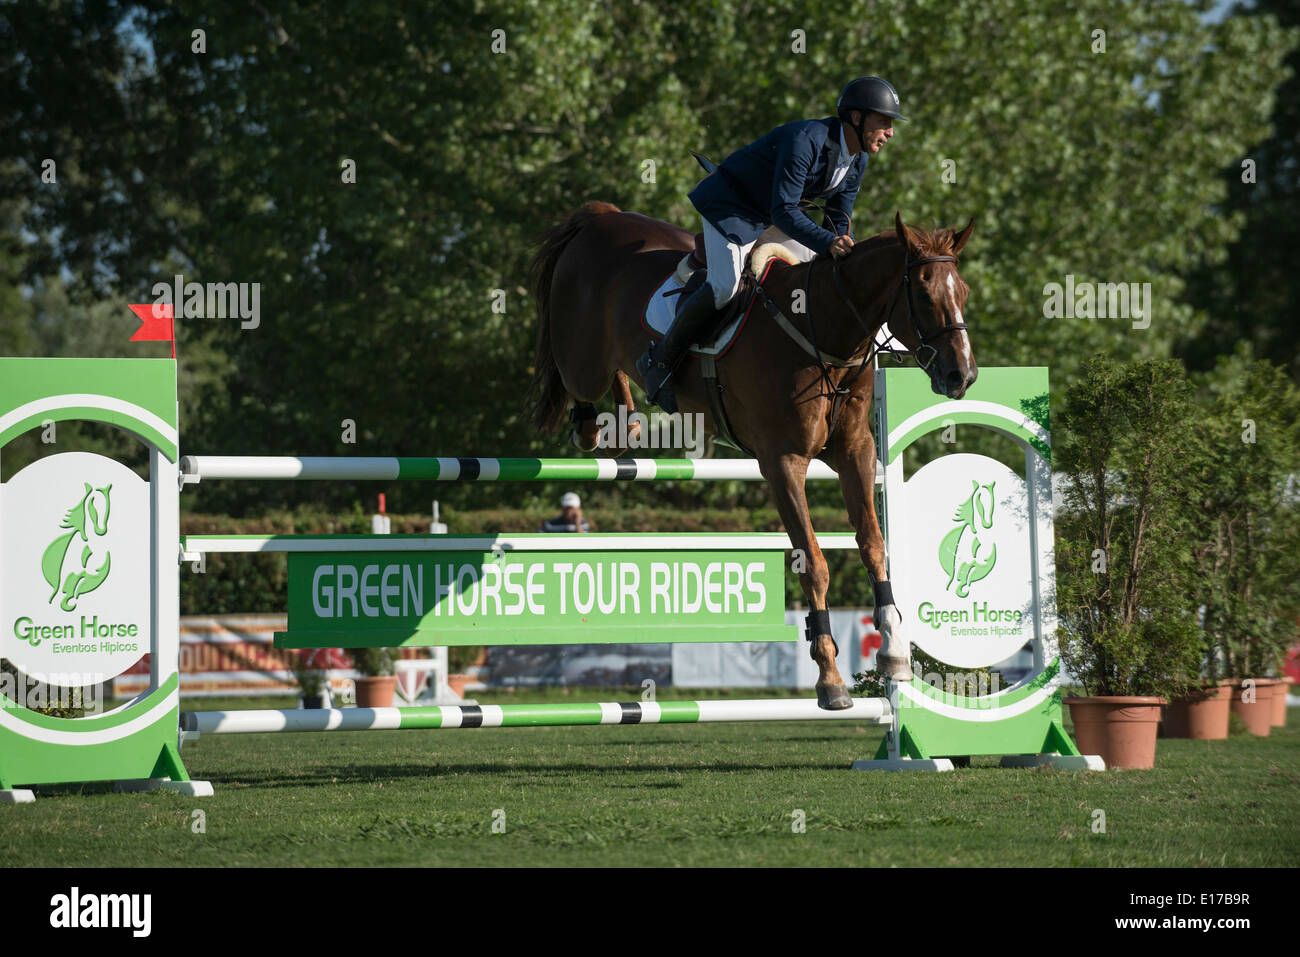 Jinete en caballo saltar por encima de obstáculos durante una competencia ecuestre Foto de stock